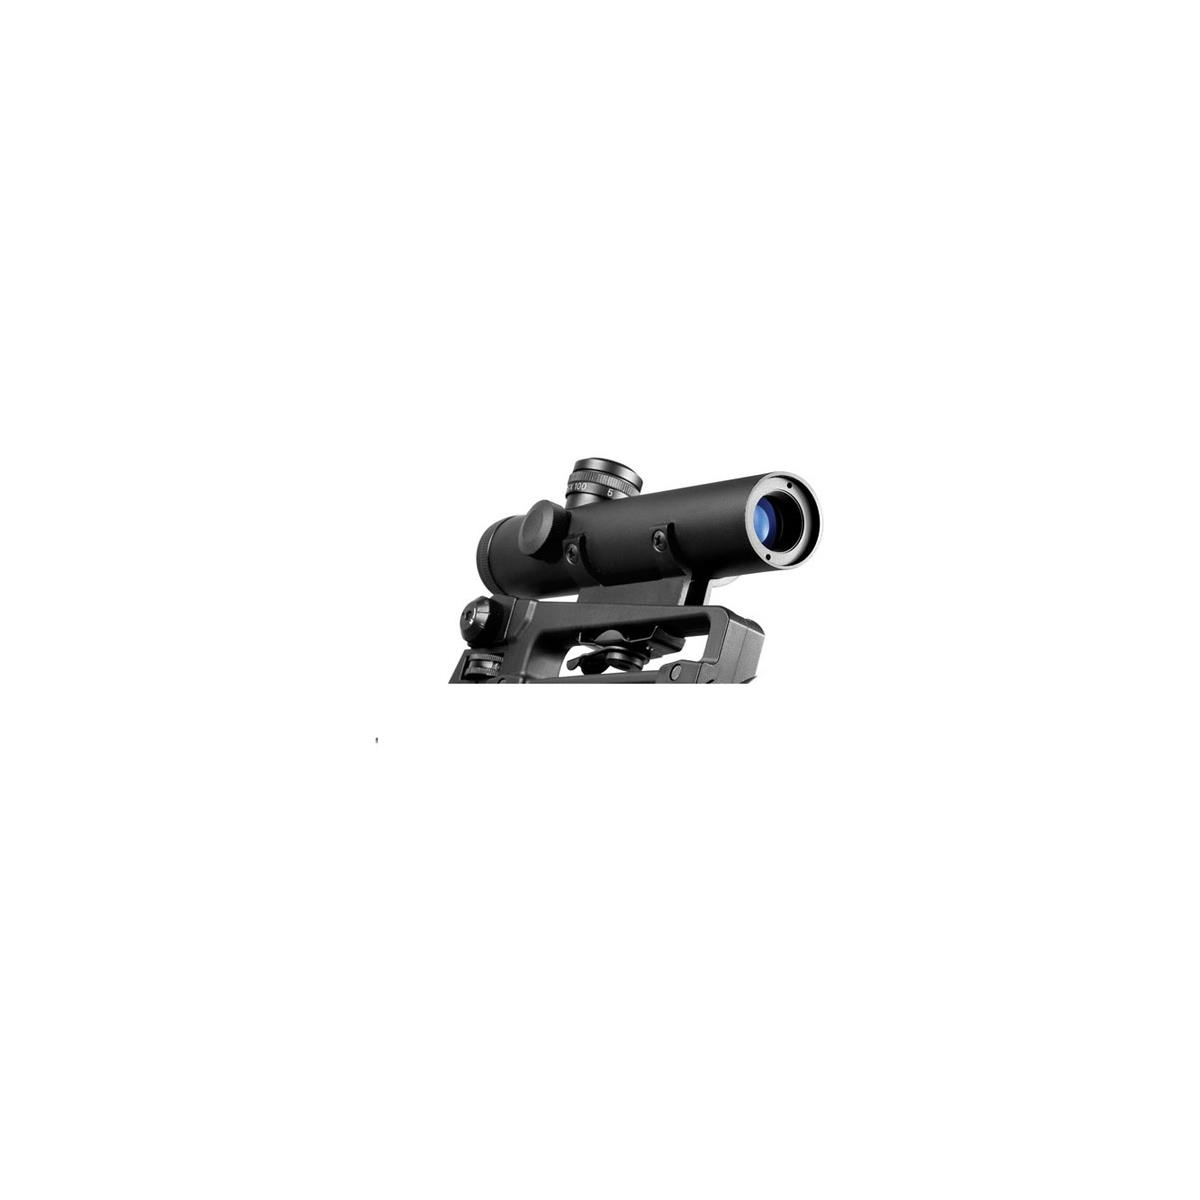 Image of Barska 4x20 Electro Riflescope